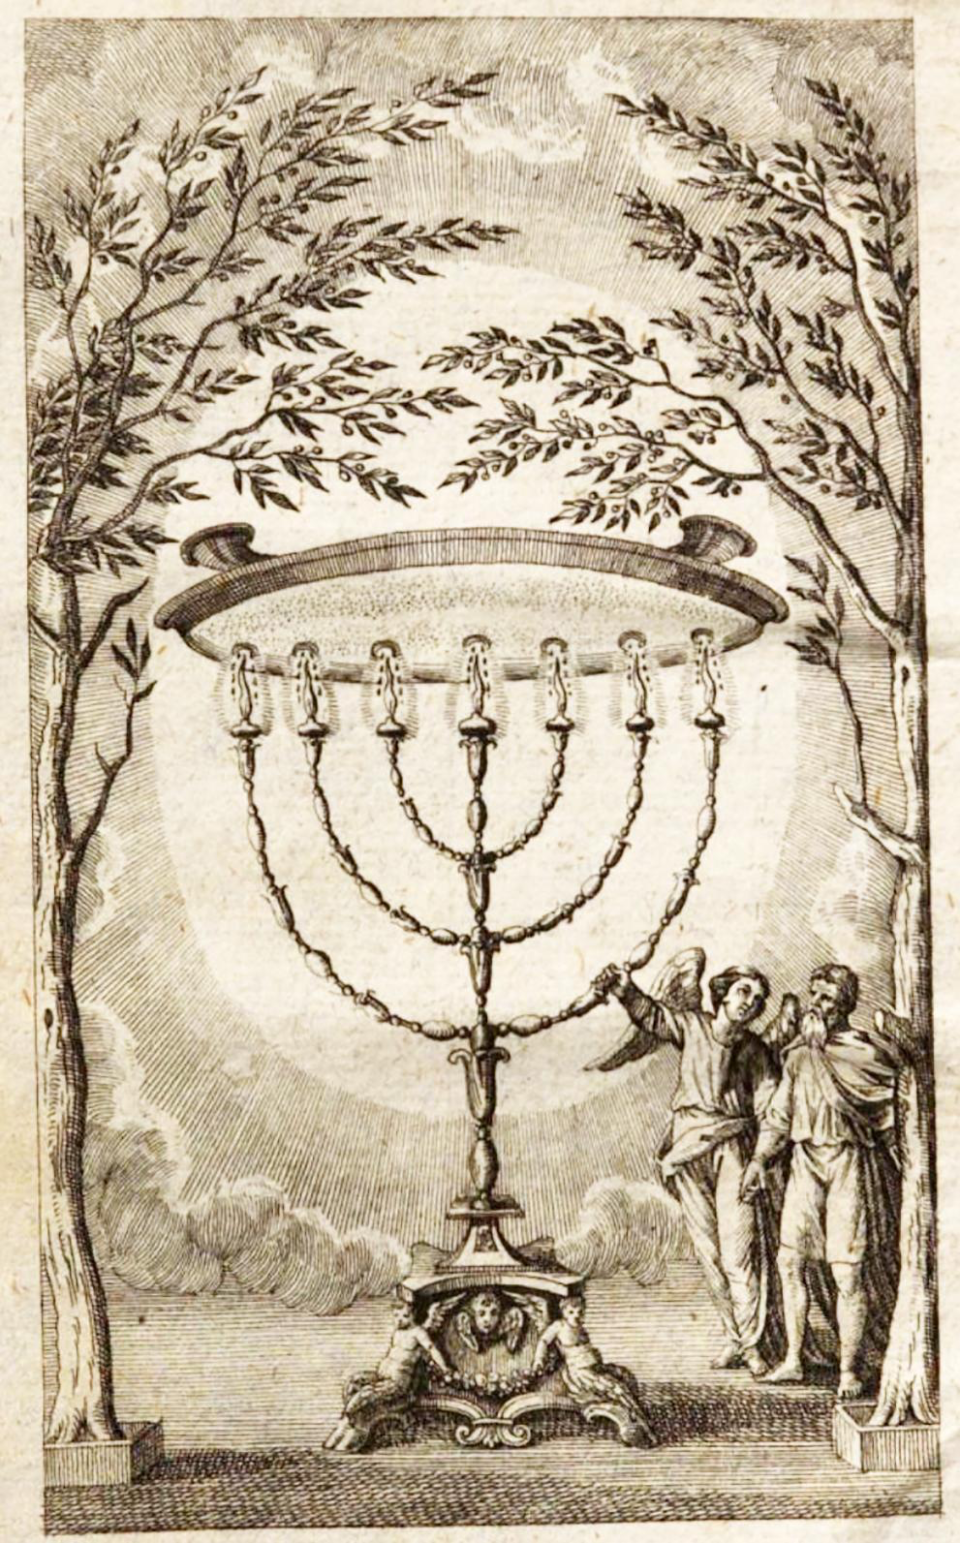 Il candelabro segreto («Prospettiva sulla magia», Karl von Eckartshausen)